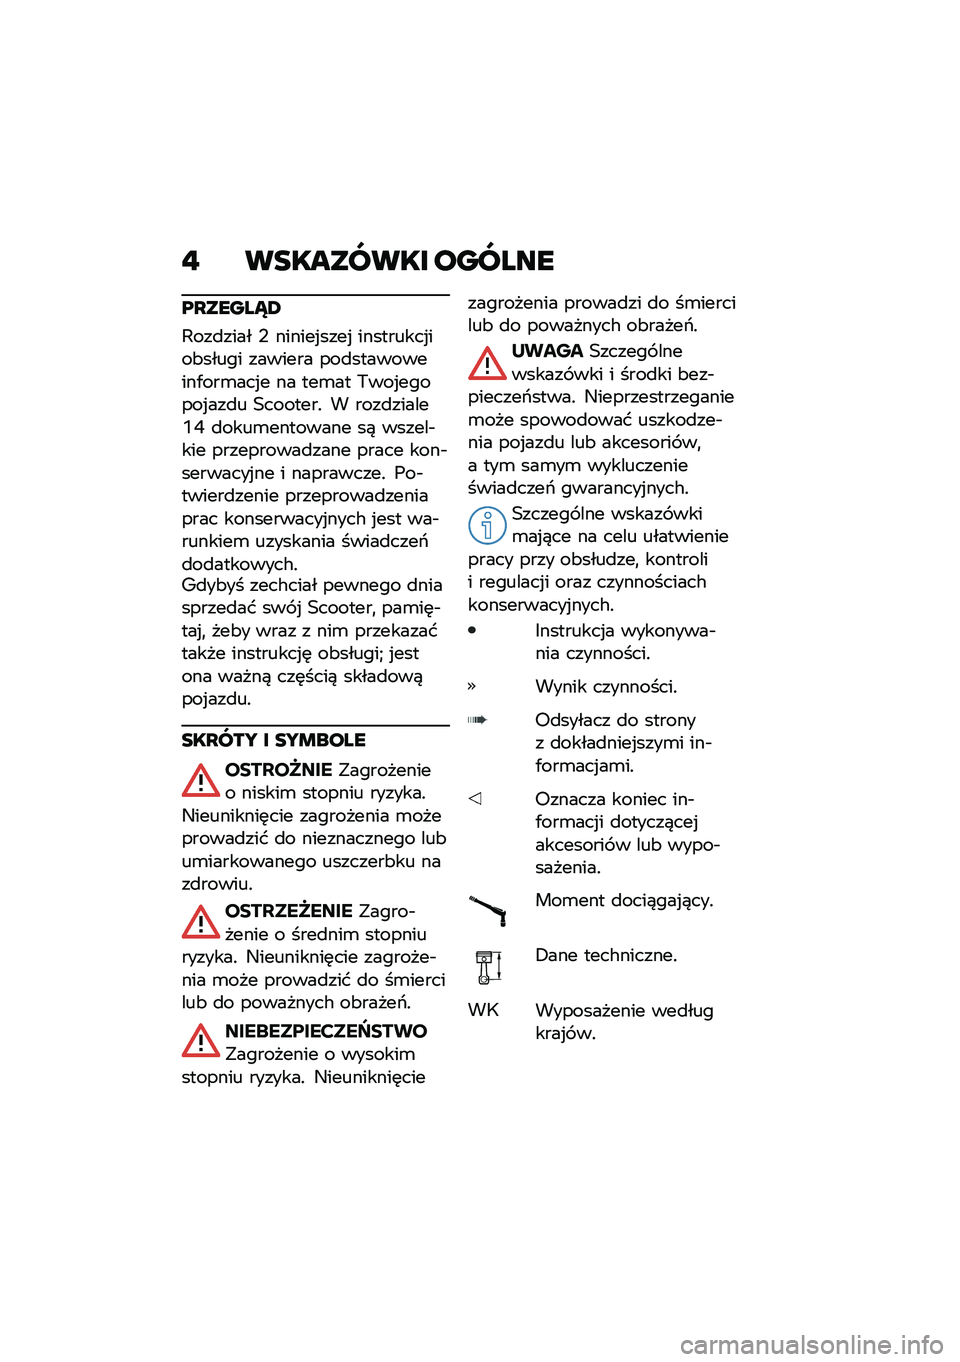 BMW MOTORRAD C 400 X 2021  Instrukcja obsługi (in Polish) �" ��������� ������
��O�����X�4
�,���
���� �- ������%����% ���������%���&����� ������� ���
����������/���\b���%� �� ���\b��